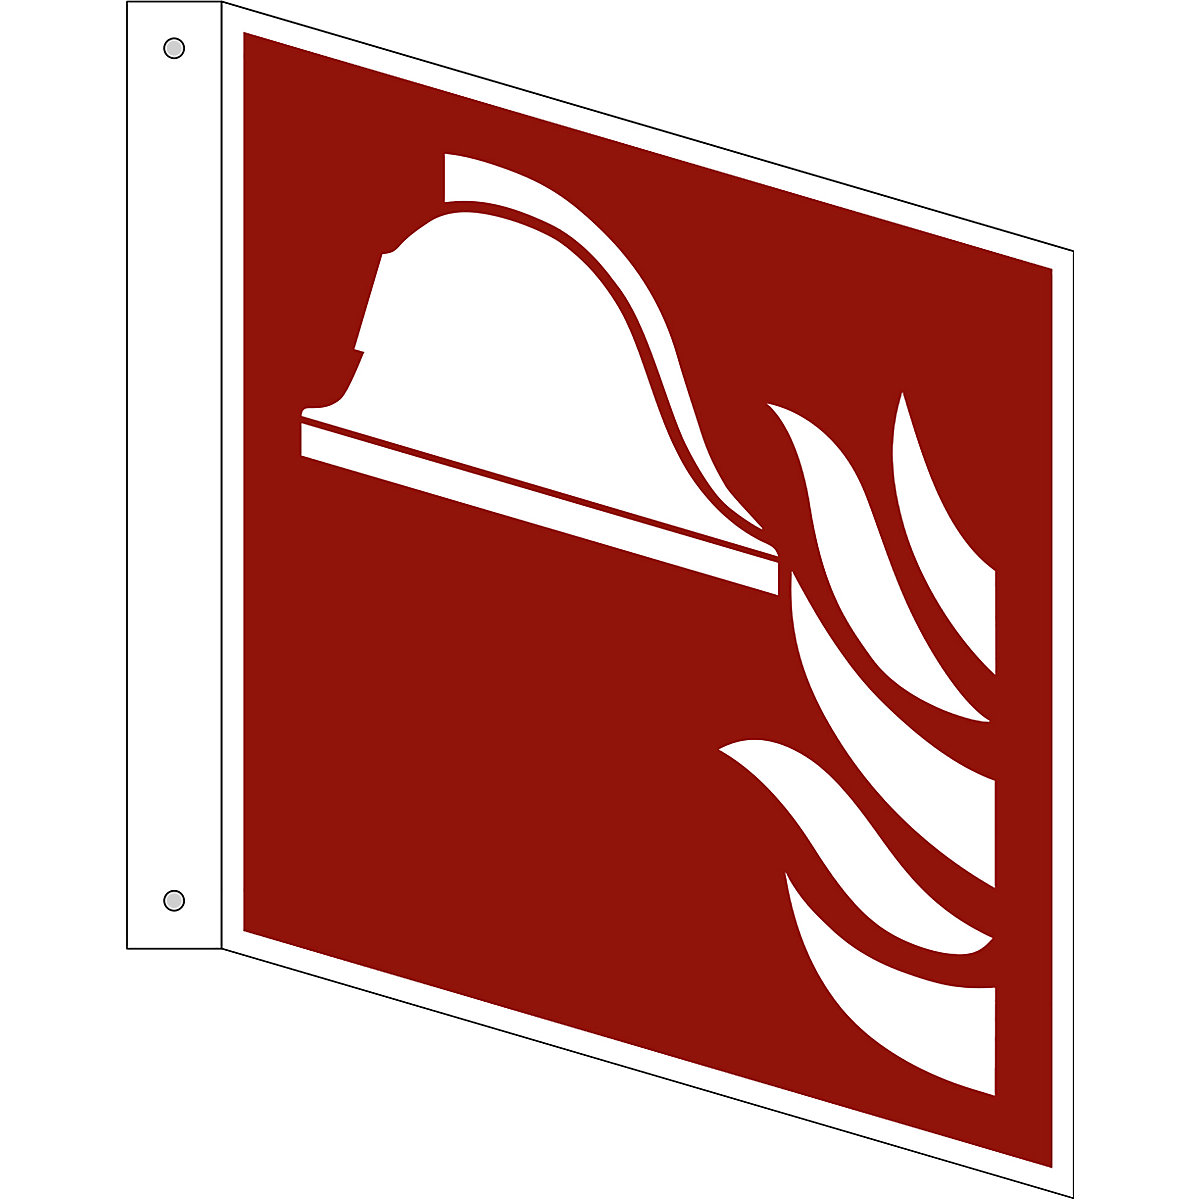 Značka pro ochranu proti požáru, prostředky a přístroje pro hašení požáru, bal.j. 10 ks, plast, vlajkový štítek, 200 x 200 mm